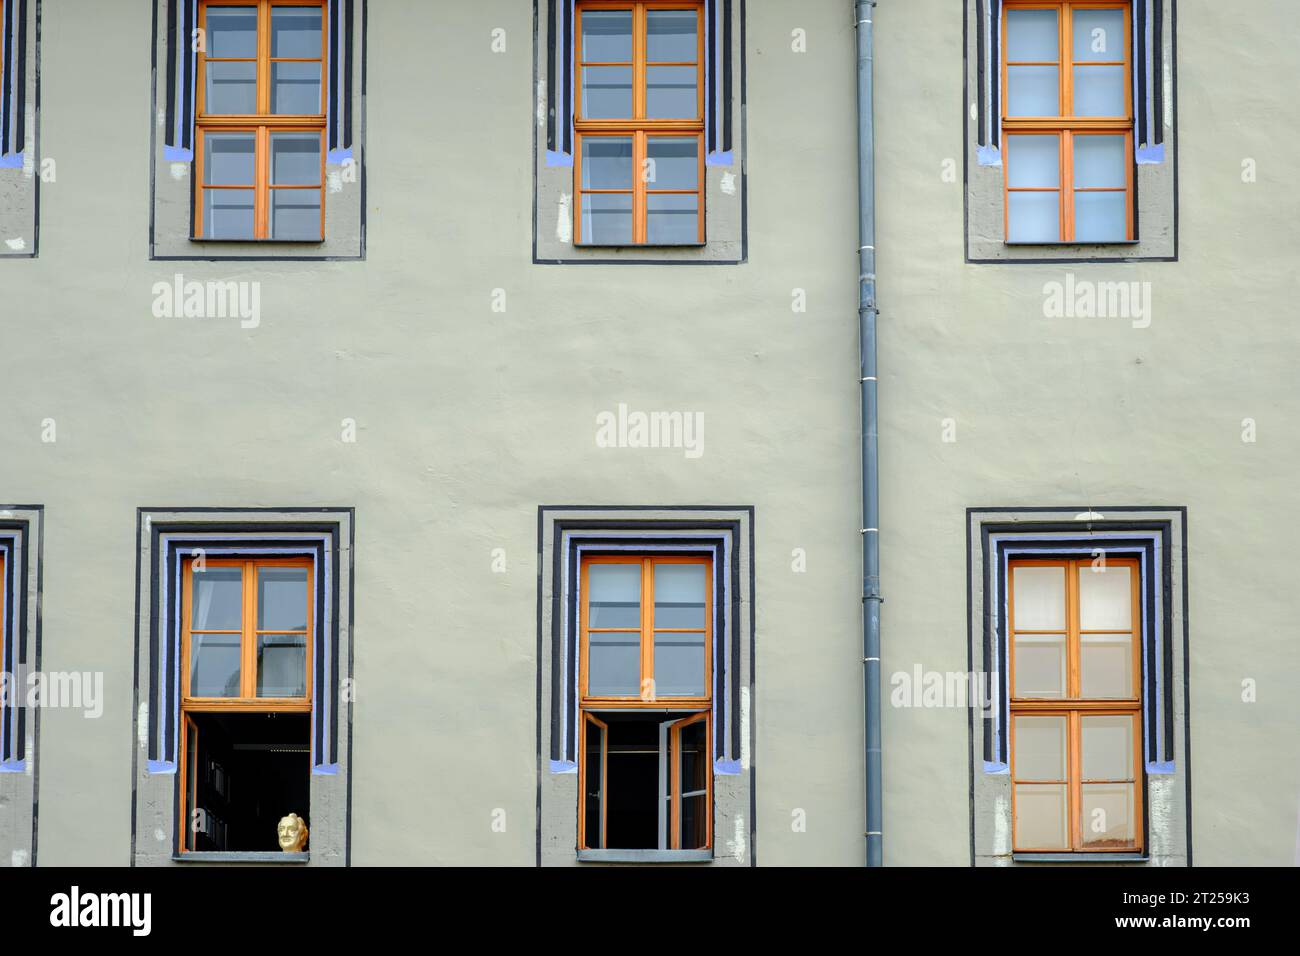 Il busto di Johann Wolfgang von Goethe nella cornice in basso a sinistra in file di finestre del Palazzo Rosso a Weimar, Turingia, Germania. Foto Stock